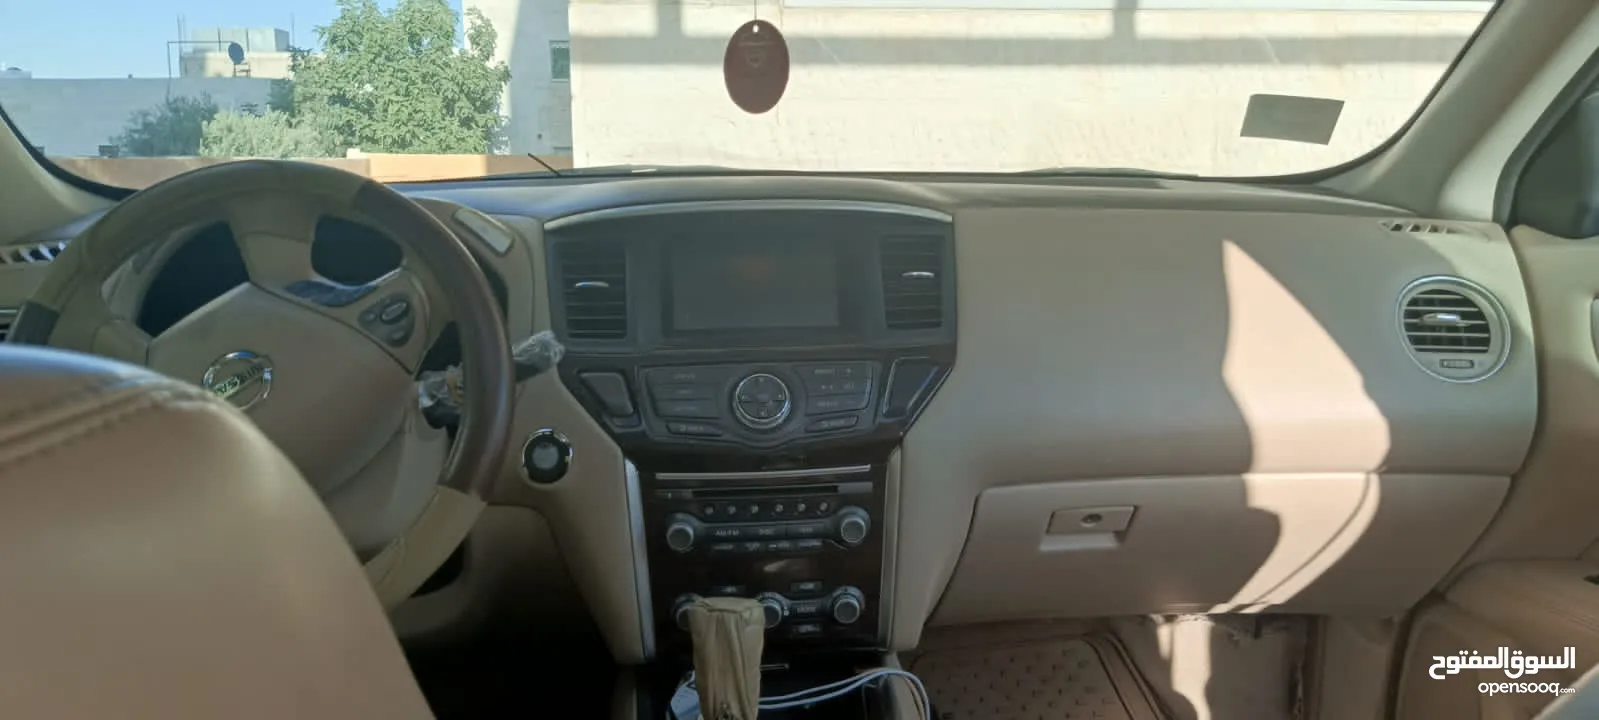 سيارة نيسان باثفندر هايبرد موديل 2015 بانوراما فوريل بسعر مغري للبيع المستعجل